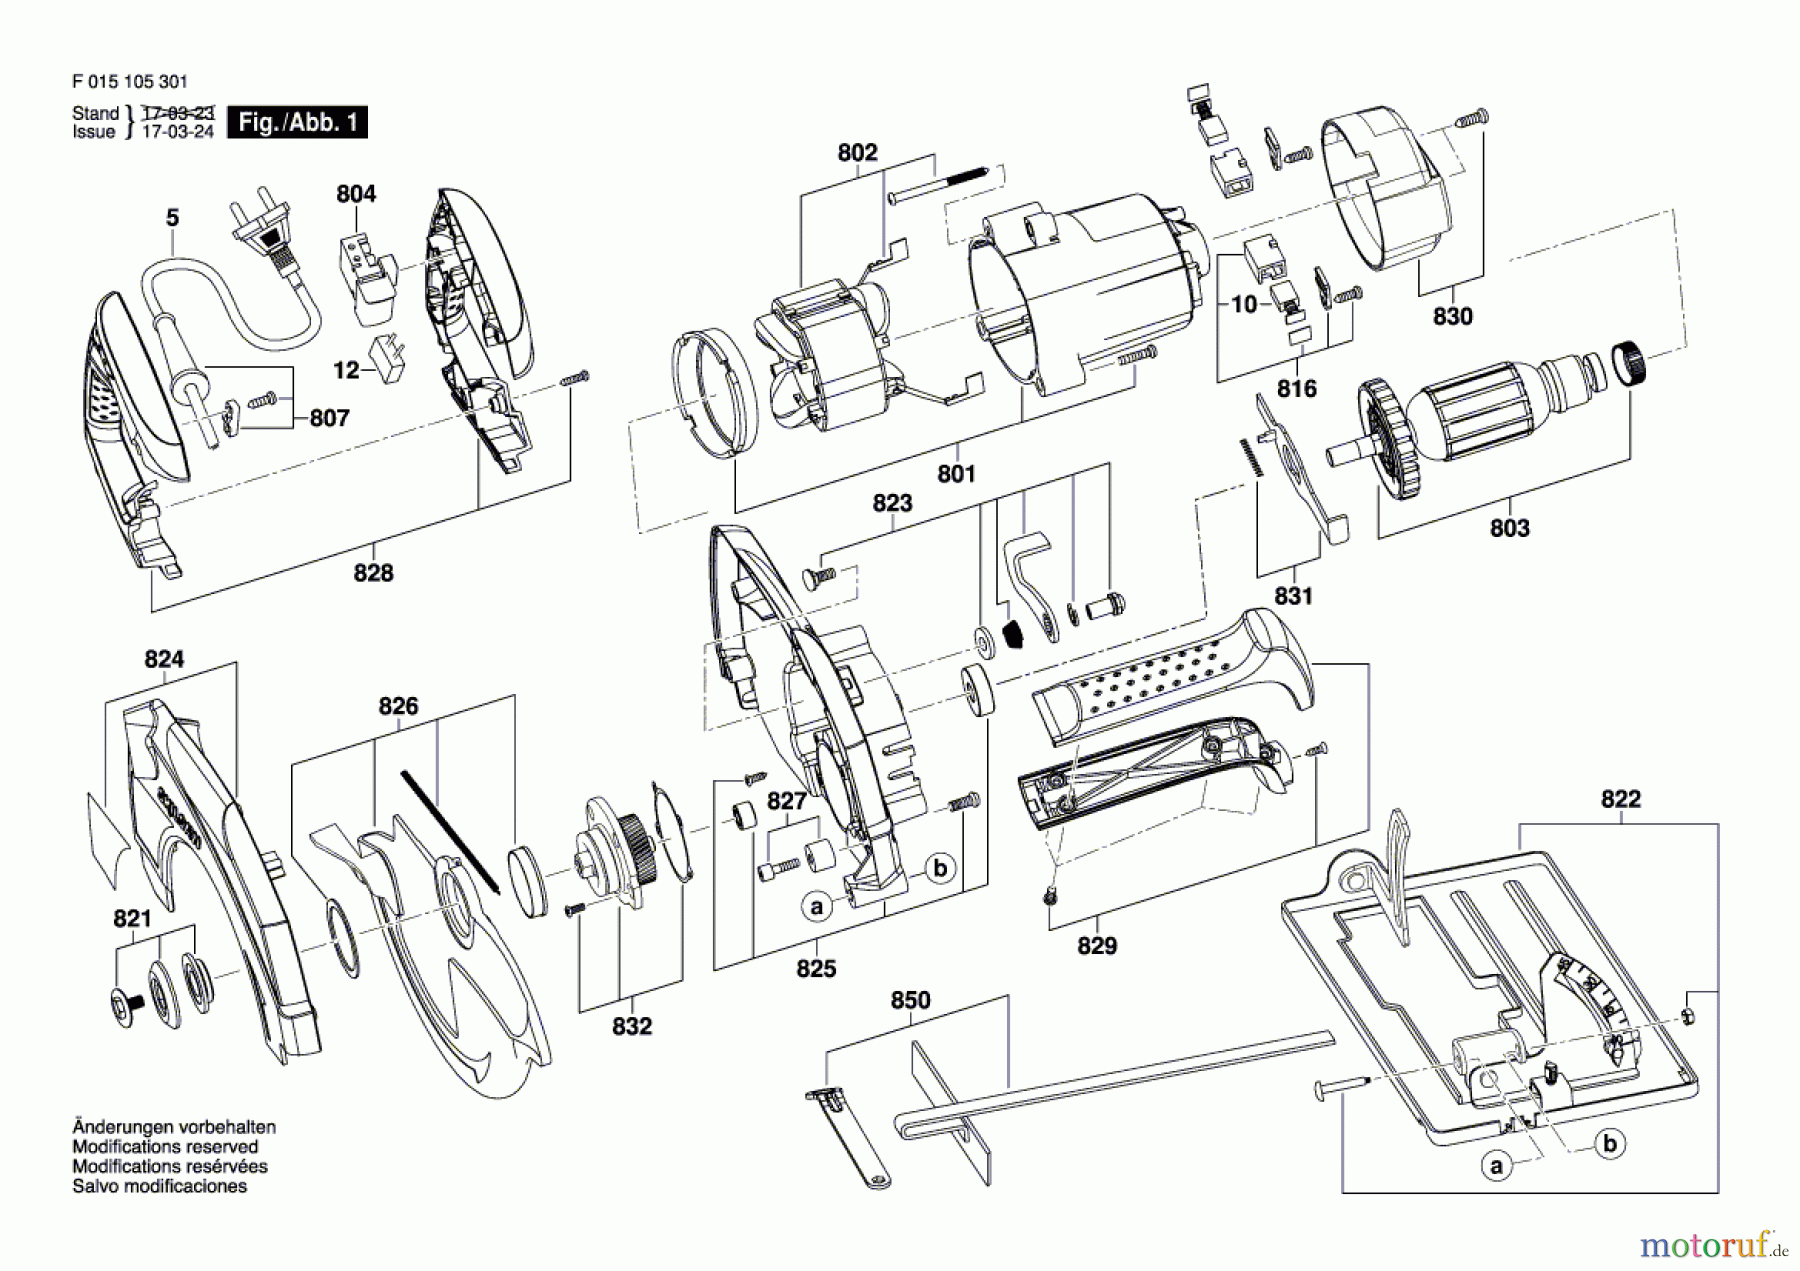  Bosch Werkzeug Kreissäge 1053 Seite 1